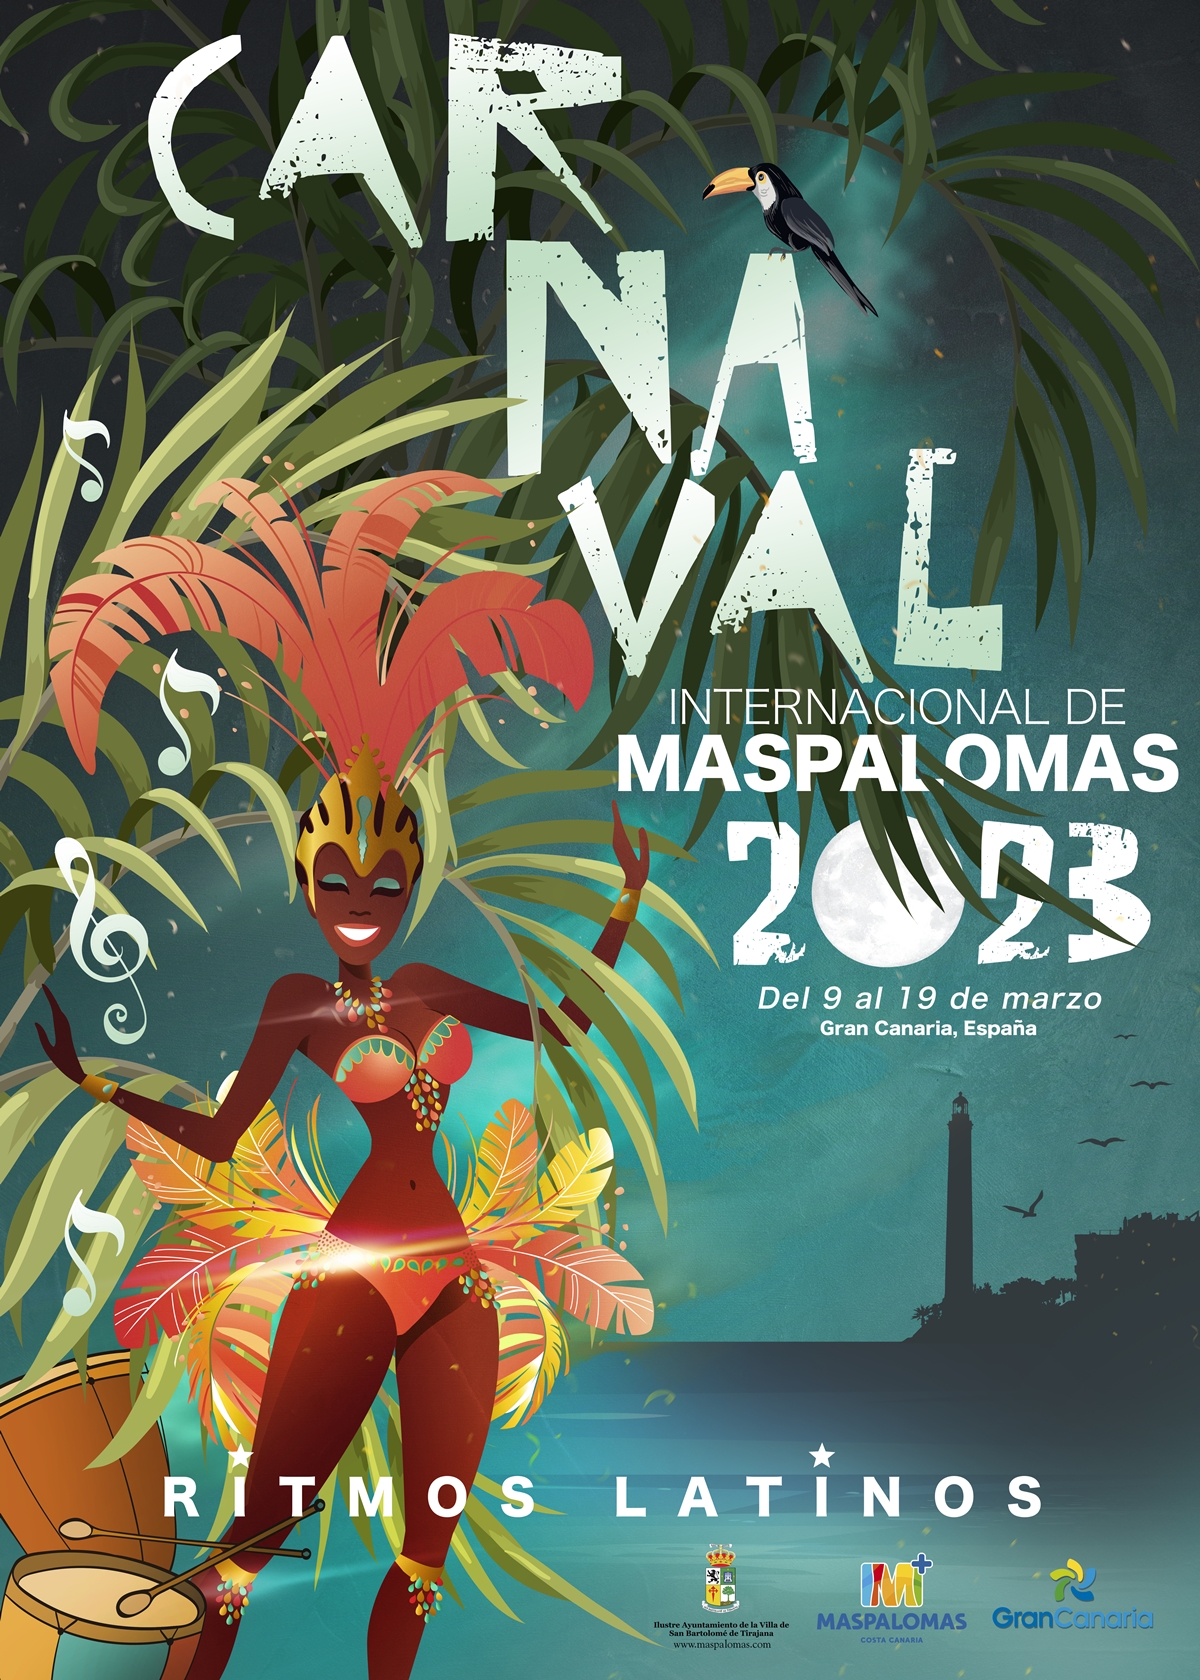 Carnaval Internacional de Maspalomas 2023